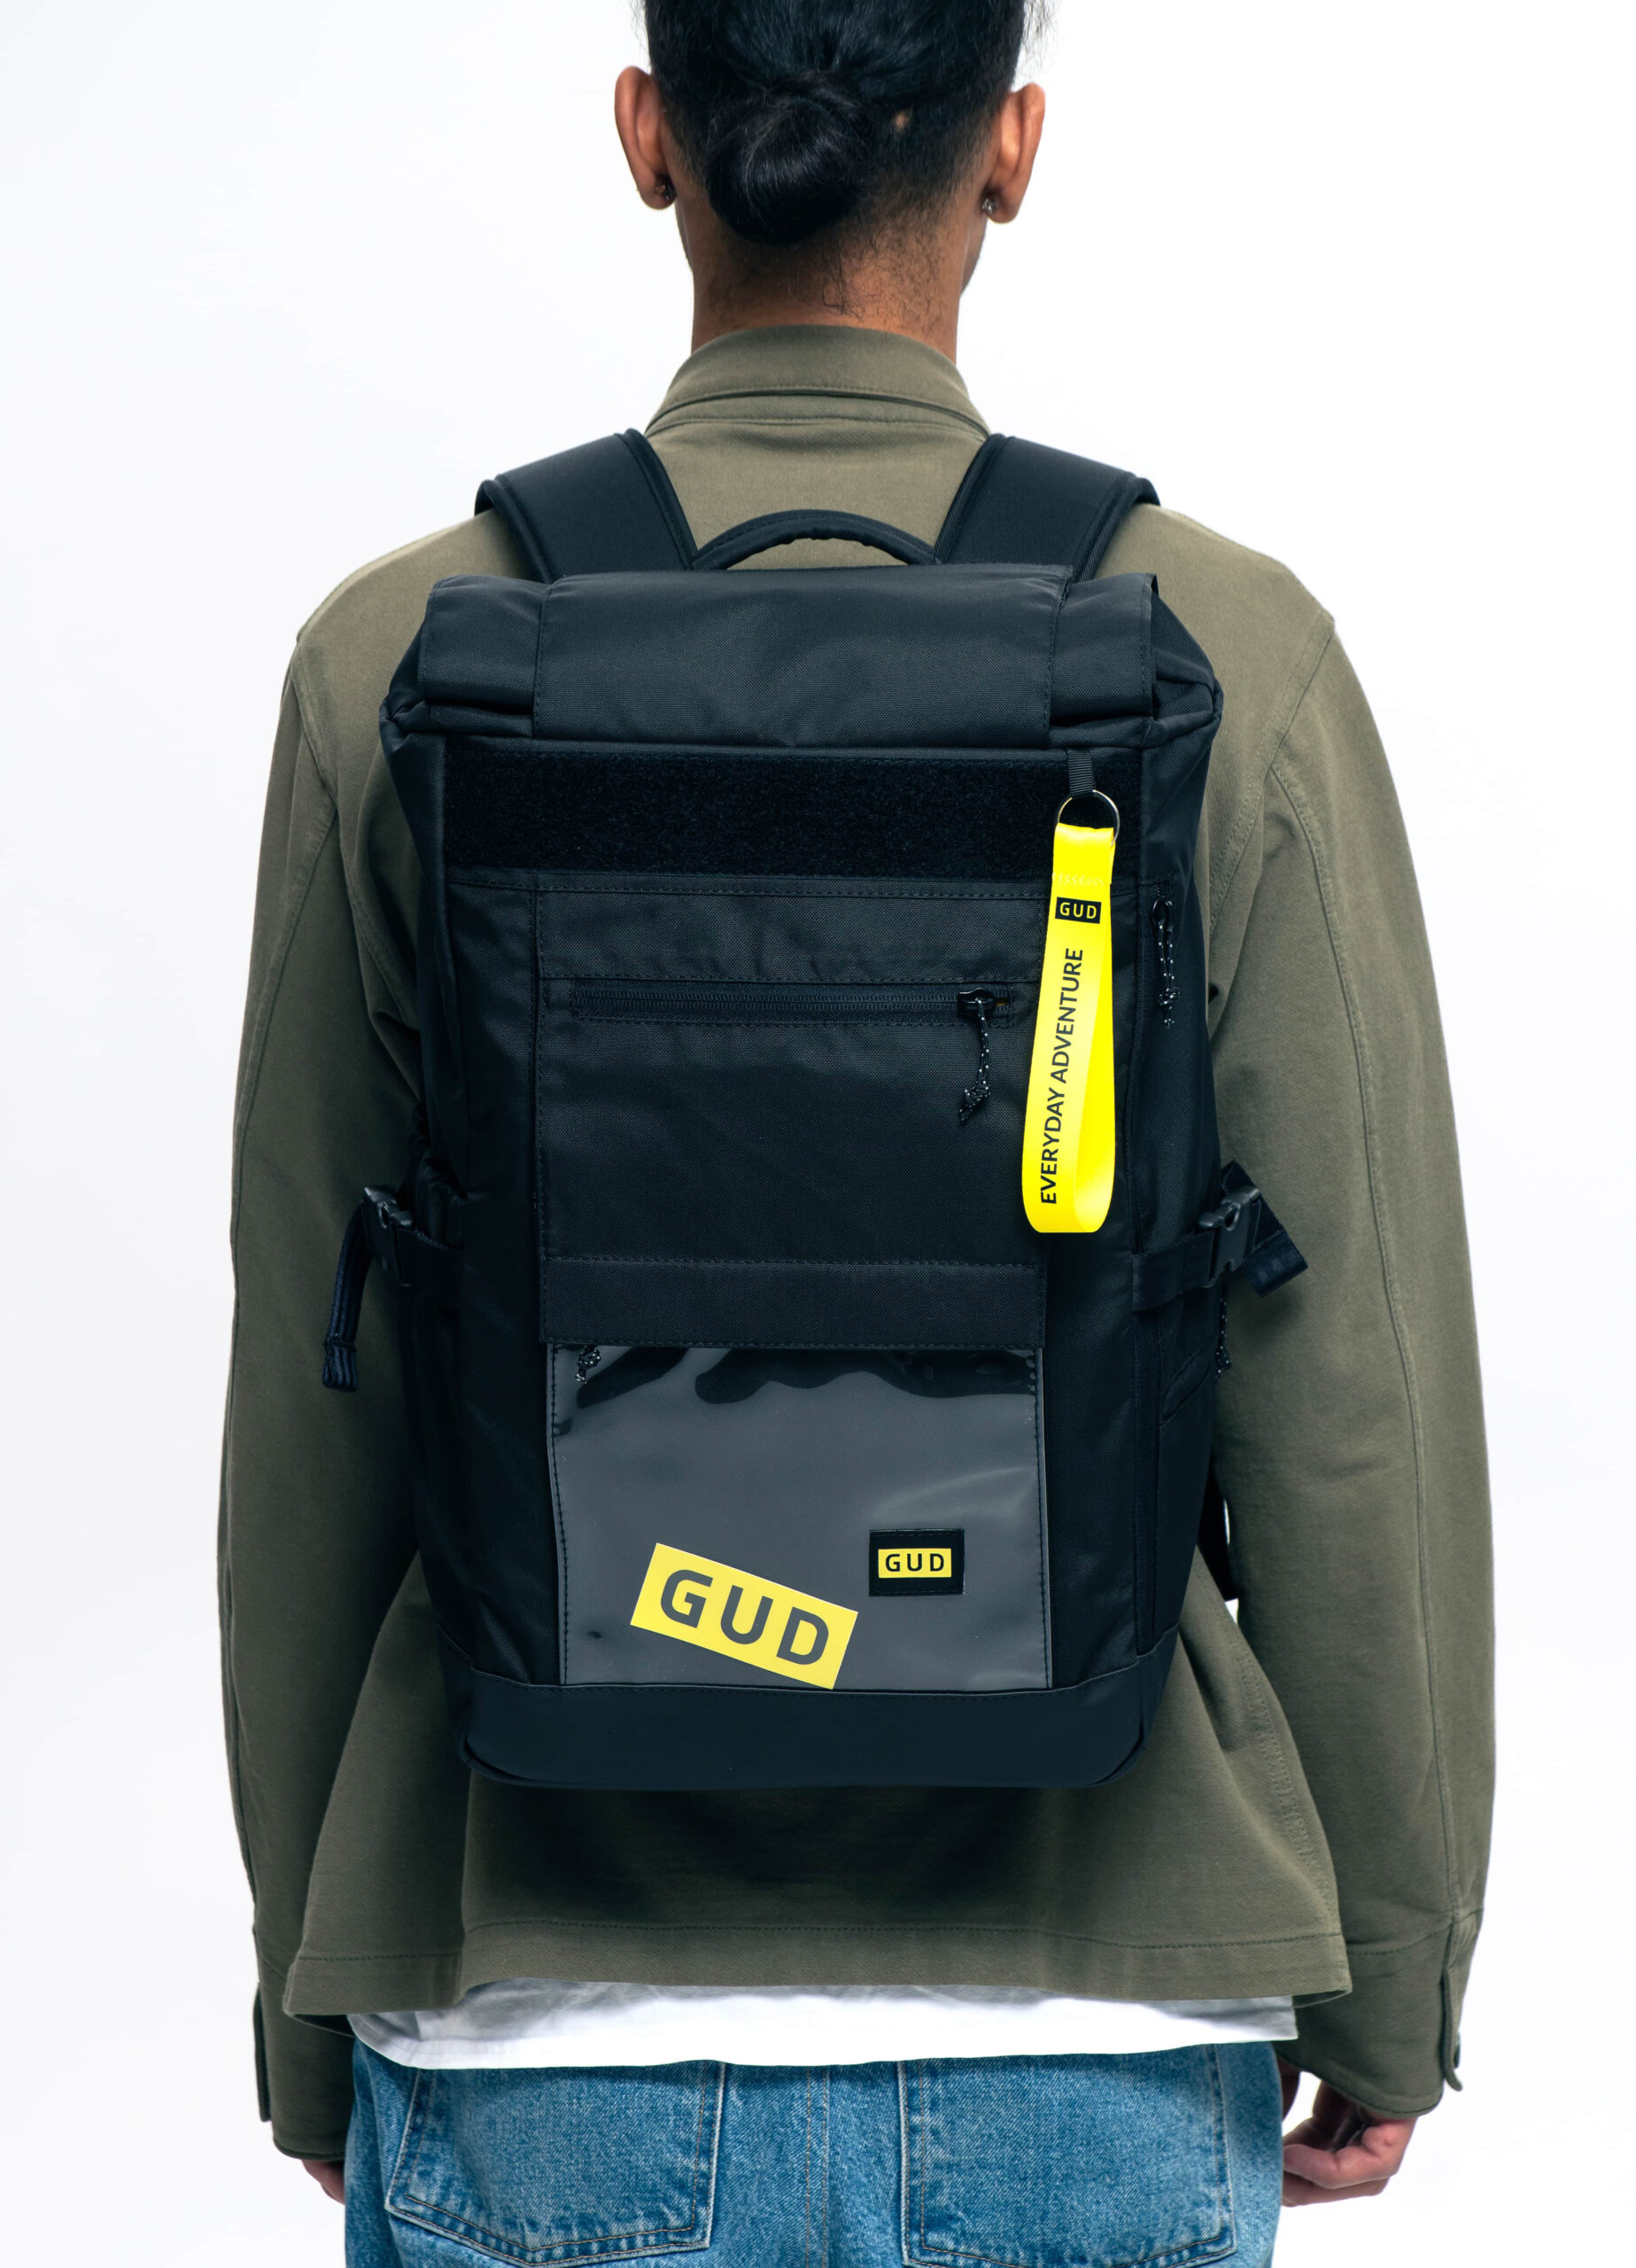 GUD Fukuro backpack